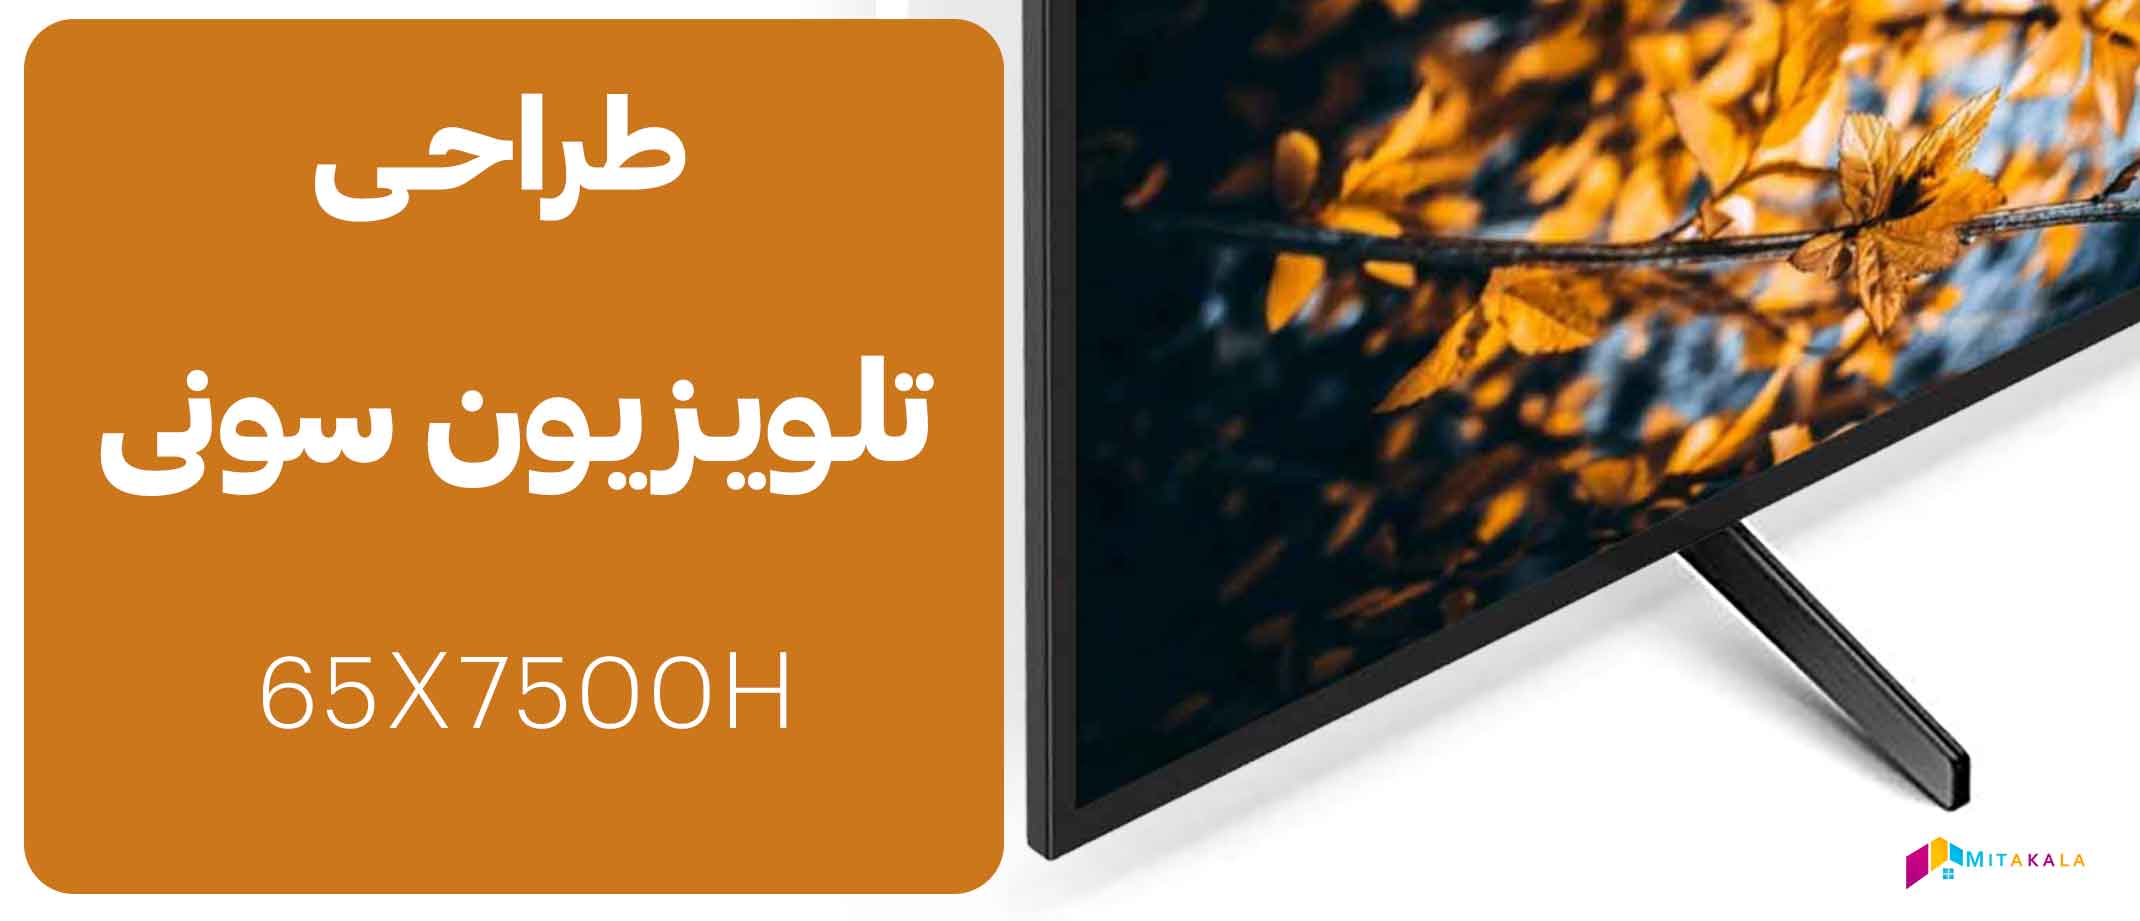 قیمت تلویزیون سونی 65x7500h